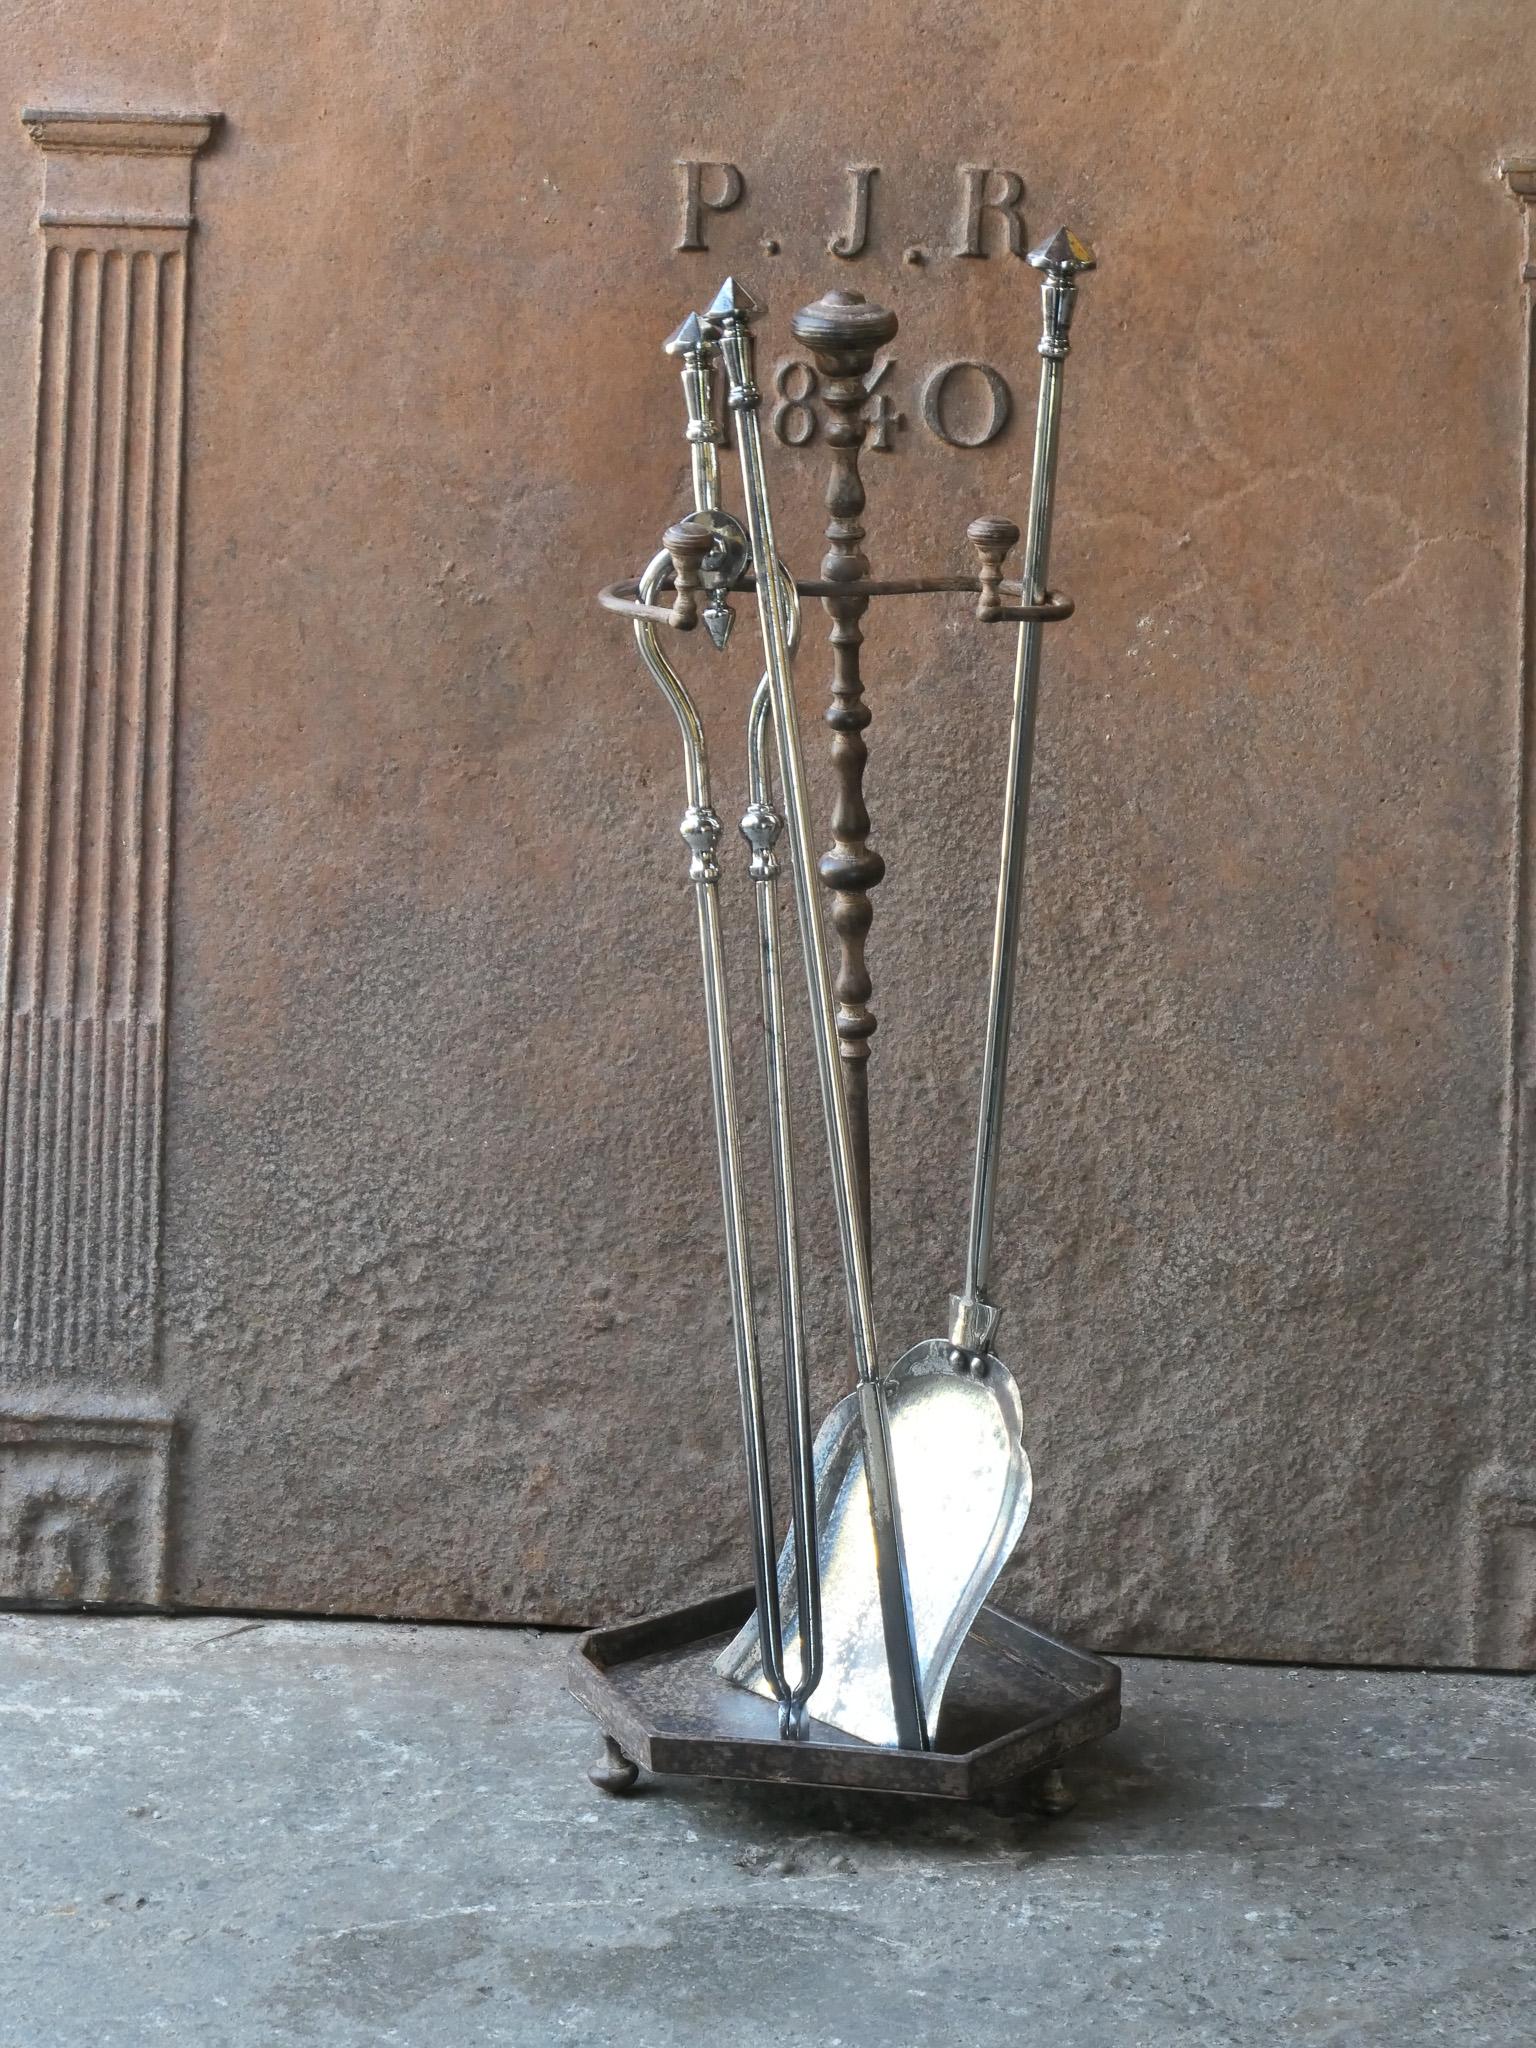 Ensemble d'outils pour cheminée du 19e siècle, d'époque victorienne anglaise. Les outils sont en acier poli, tandis que le support est en fer forgé et en fonte. L'ensemble d'outils comprend une pince, un tisonnier, une pelle et un support. L'état